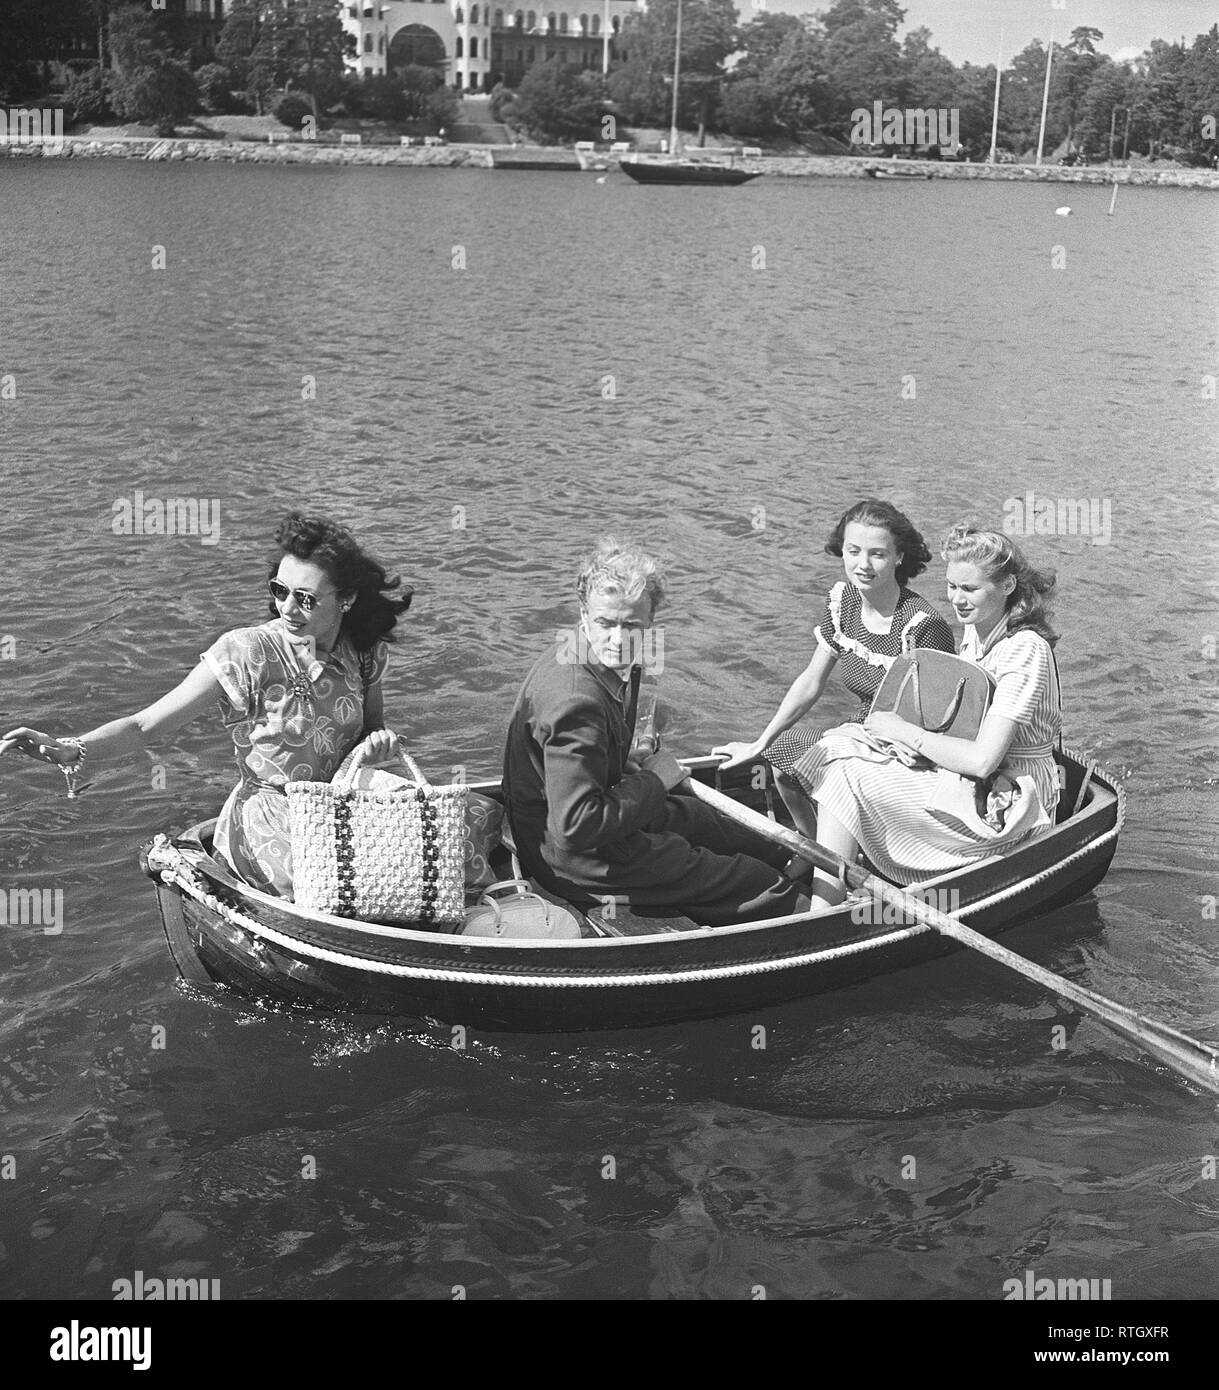 1940 Sommer. Vier Personen sitzen in einem sehr kleinen Ruderboot. Sie sind alle hübsch im Sommer Kleider und Picknick Taschen gekleidet. Der Mann Zeilen. Foto Kristoffersson ref AC 102-3. Schweden 1946 Stockfoto